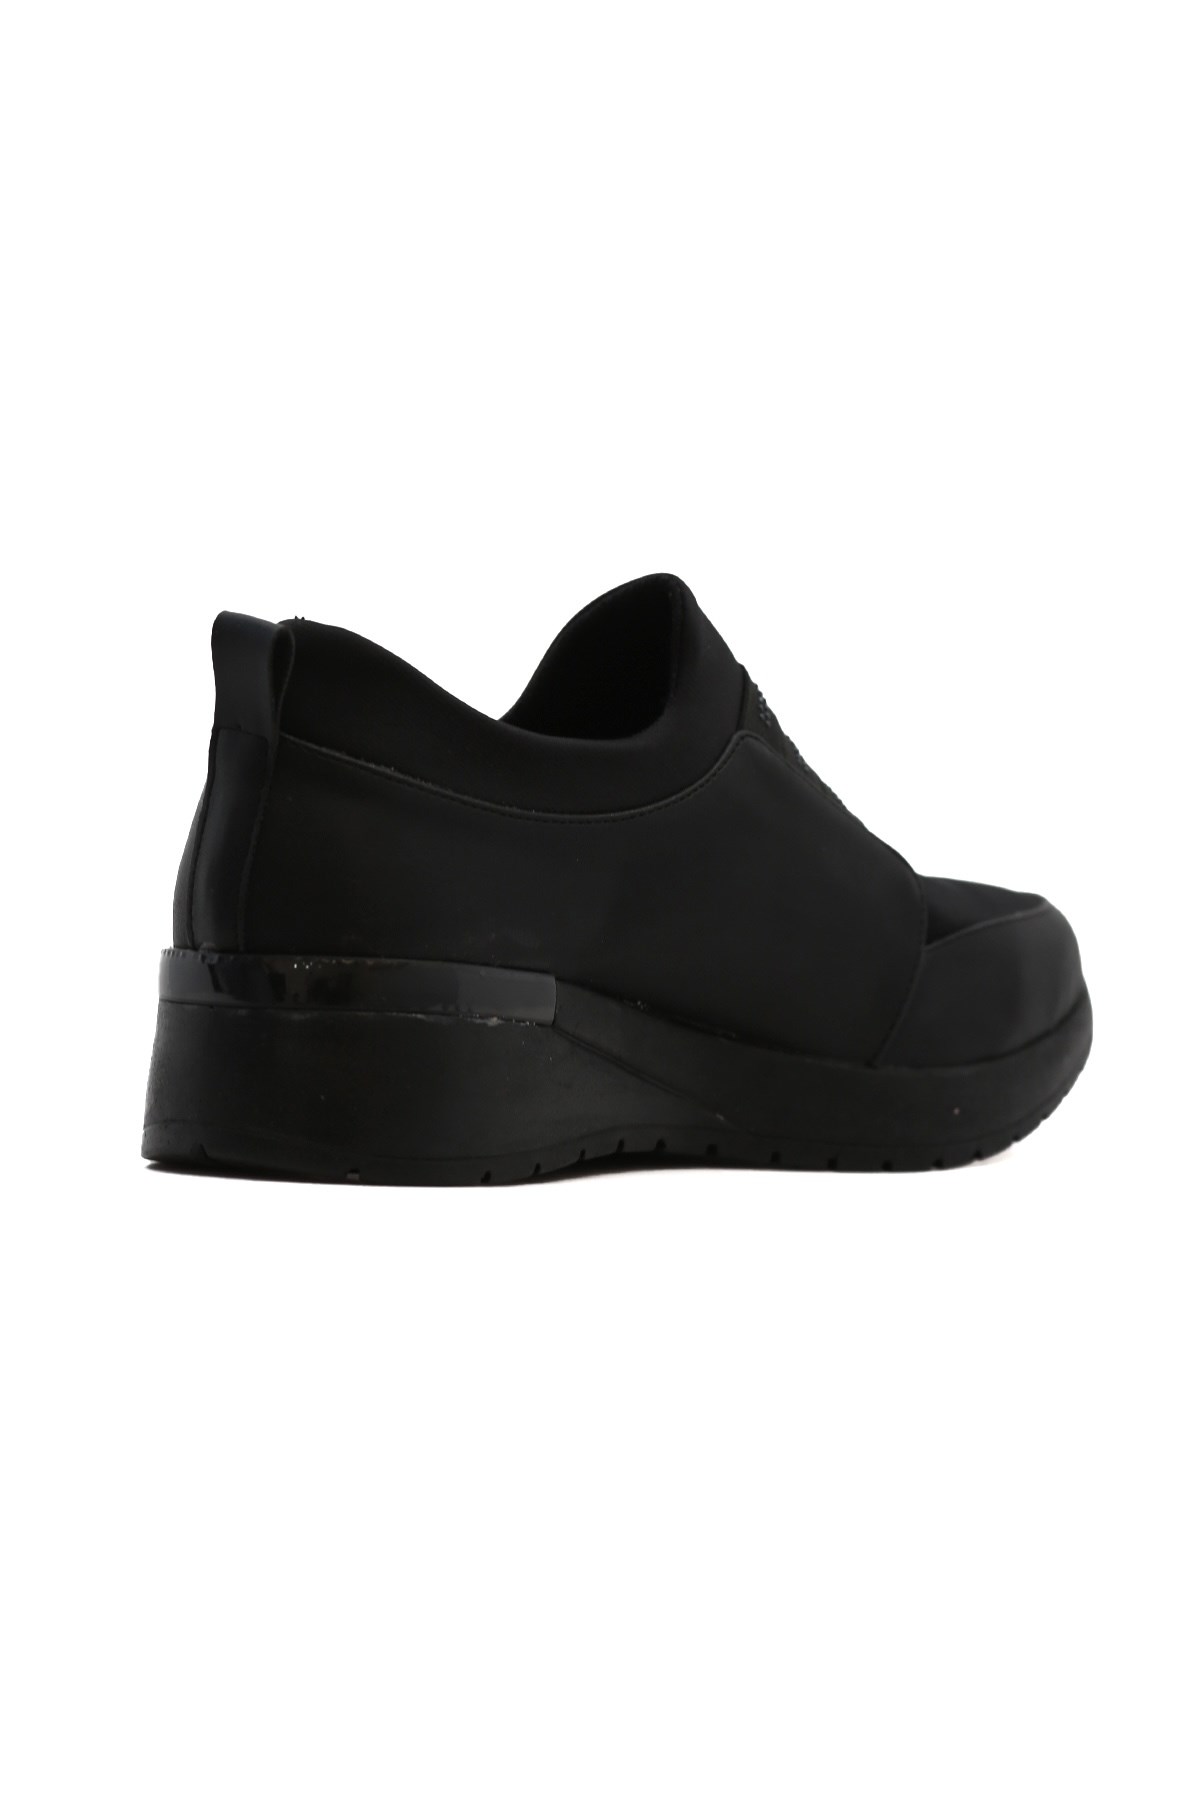 Si̇es 3 Cm Tabanli Taş Detayli Yeni̇ Sezon Sneakers Spor Ayakkabi Siyah